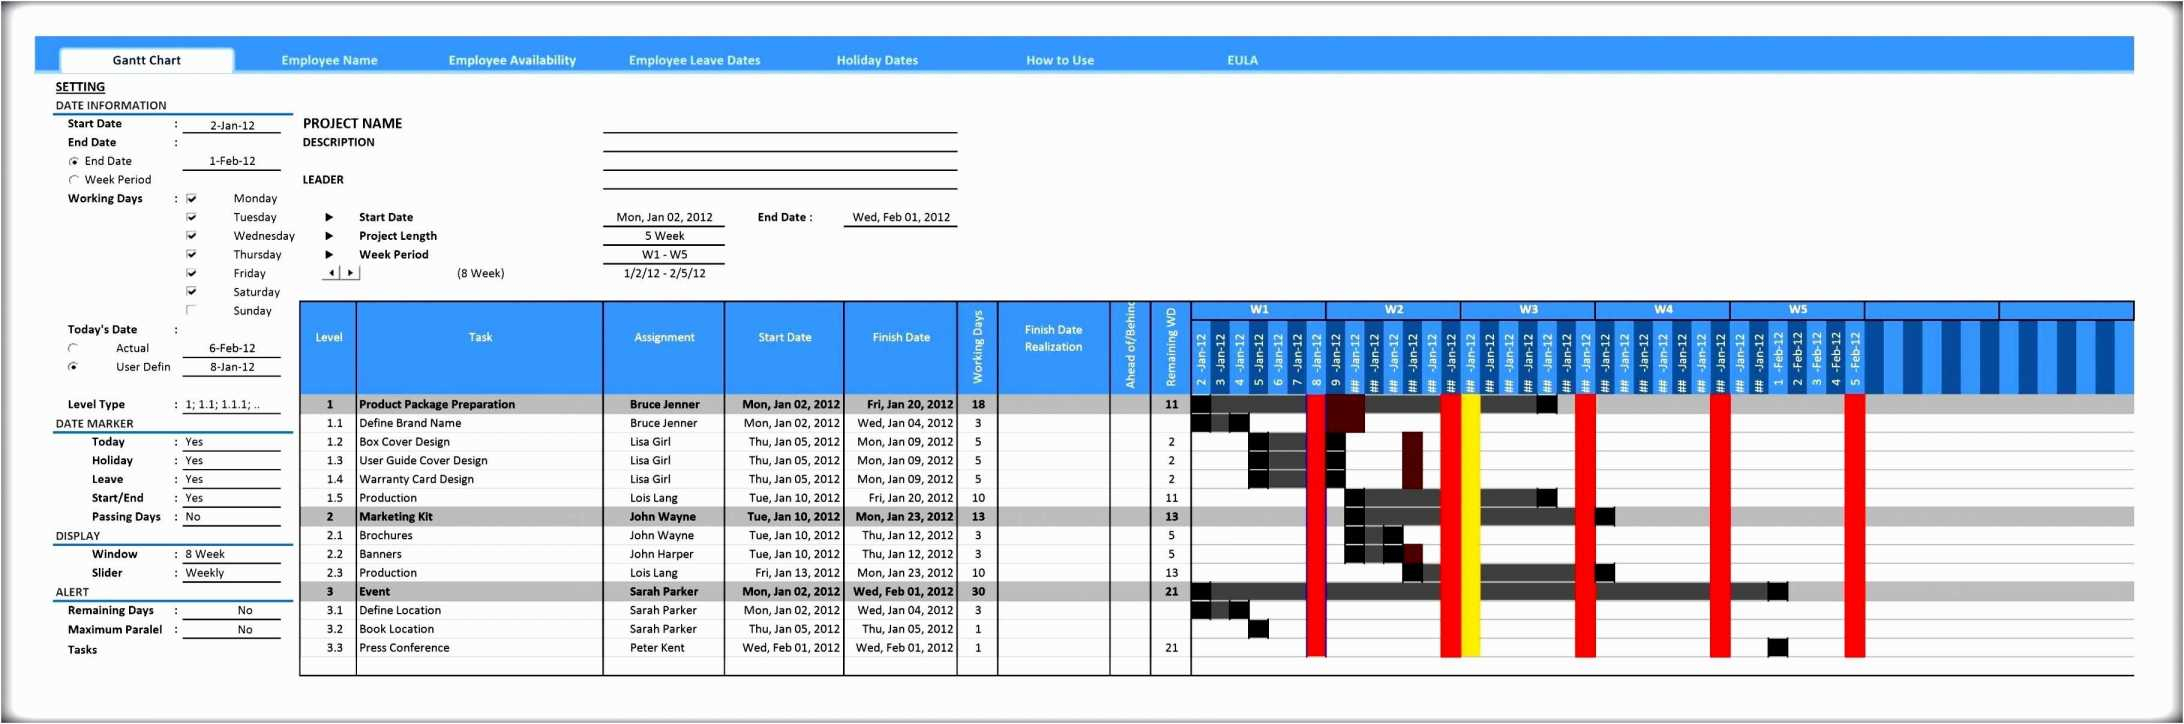 Gantt Chart Excel Template Gantt Chart Template Excel Unique Gantt For Gantt Chart Template In Excel